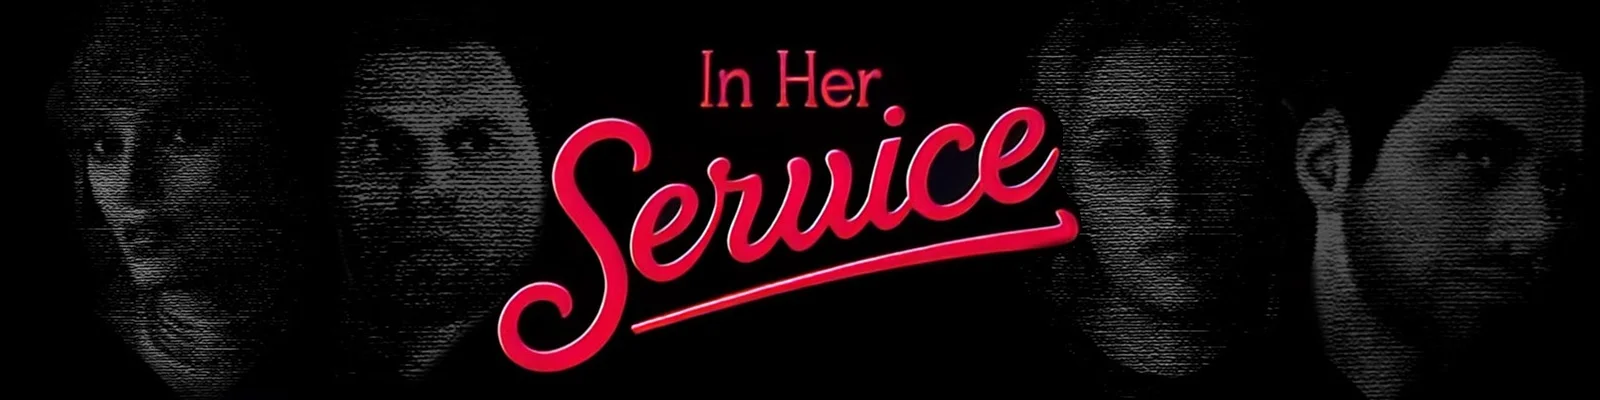 In Her Service v.0.57